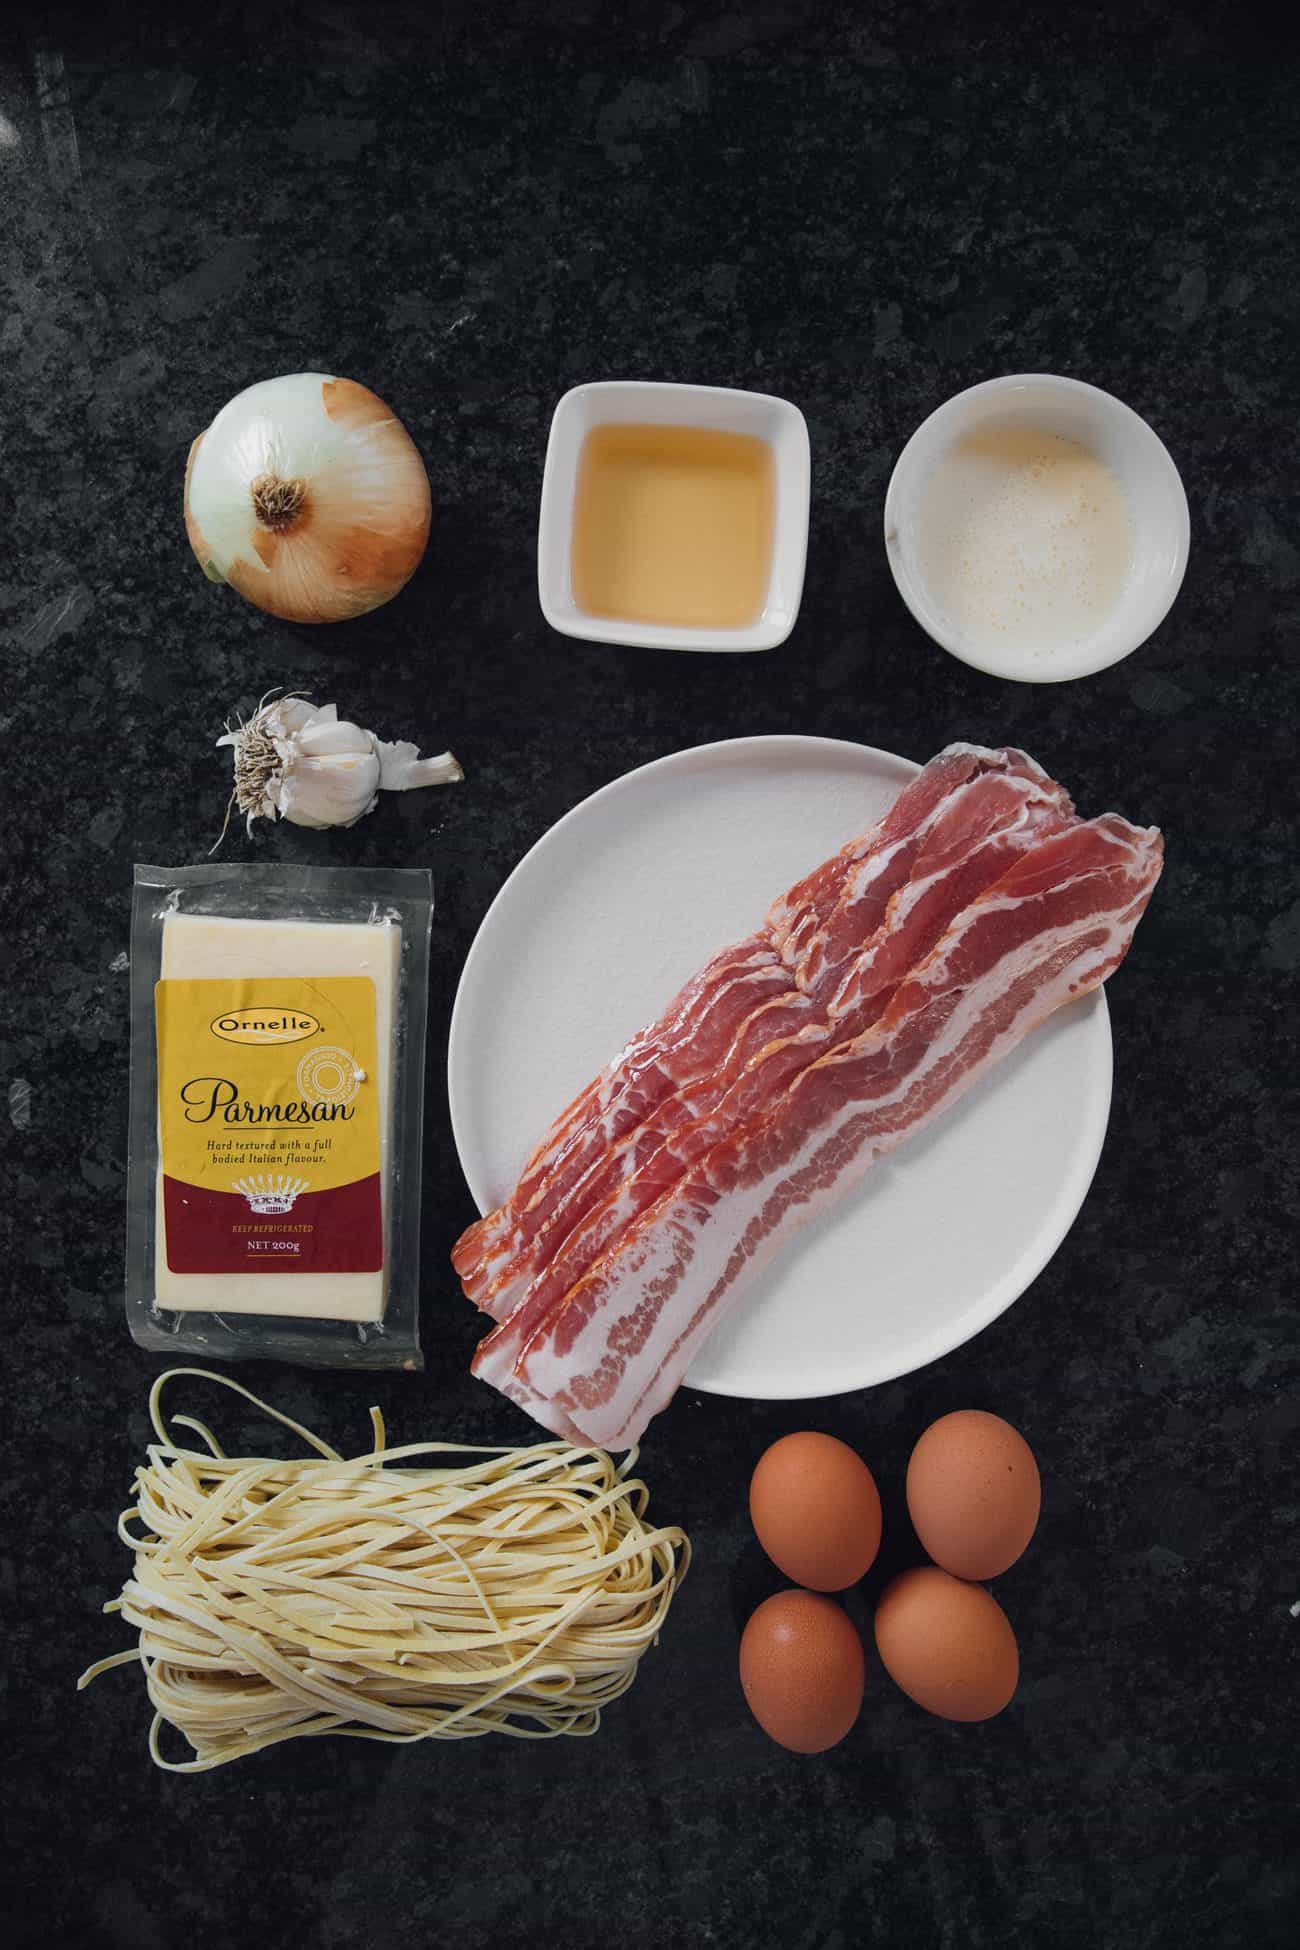 Italian Carbonara with Bacon